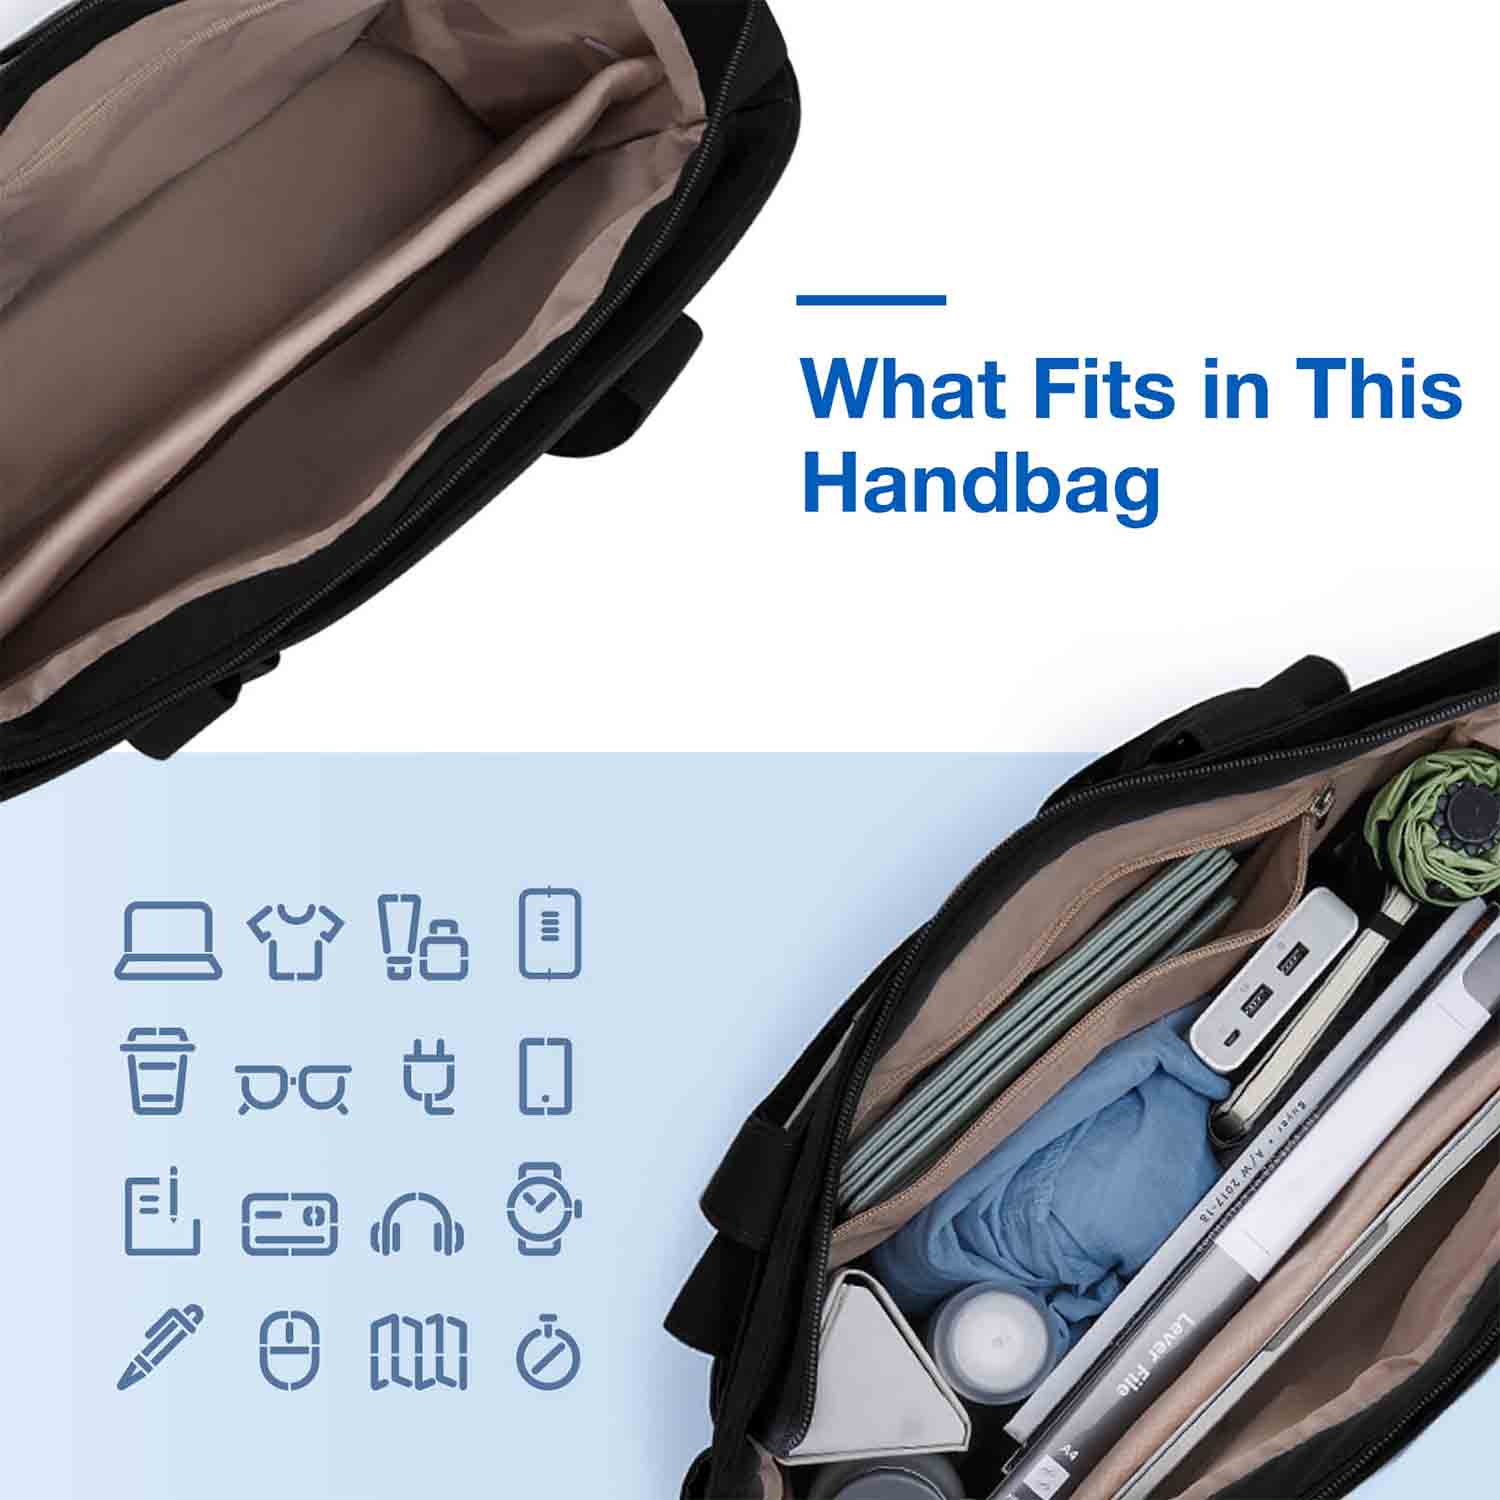 खरीदने के लिए महिला ढोना बैग काम के लिए लैपटॉप ढोना हैंडबैग बड़े कंधे बैग,महिला ढोना बैग काम के लिए लैपटॉप ढोना हैंडबैग बड़े कंधे बैग दाम,महिला ढोना बैग काम के लिए लैपटॉप ढोना हैंडबैग बड़े कंधे बैग ब्रांड,महिला ढोना बैग काम के लिए लैपटॉप ढोना हैंडबैग बड़े कंधे बैग मैन्युफैक्चरर्स,महिला ढोना बैग काम के लिए लैपटॉप ढोना हैंडबैग बड़े कंधे बैग उद्धृत मूल्य,महिला ढोना बैग काम के लिए लैपटॉप ढोना हैंडबैग बड़े कंधे बैग कंपनी,